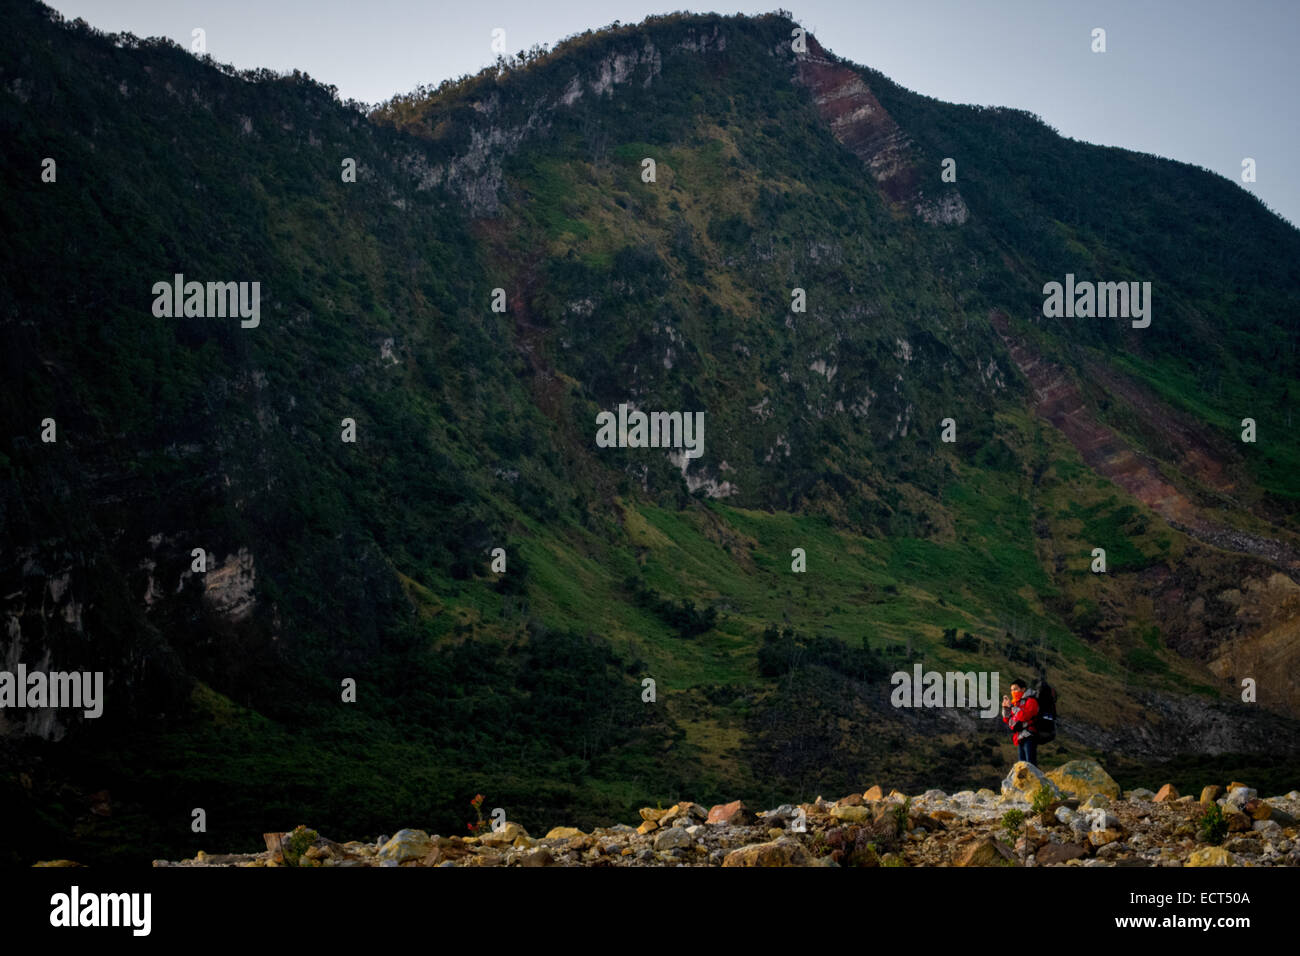 Ein Bergsteiger in rote Jacke mit der Caldera-Wand des Mount Papandayan im Hintergrund. Stockfoto